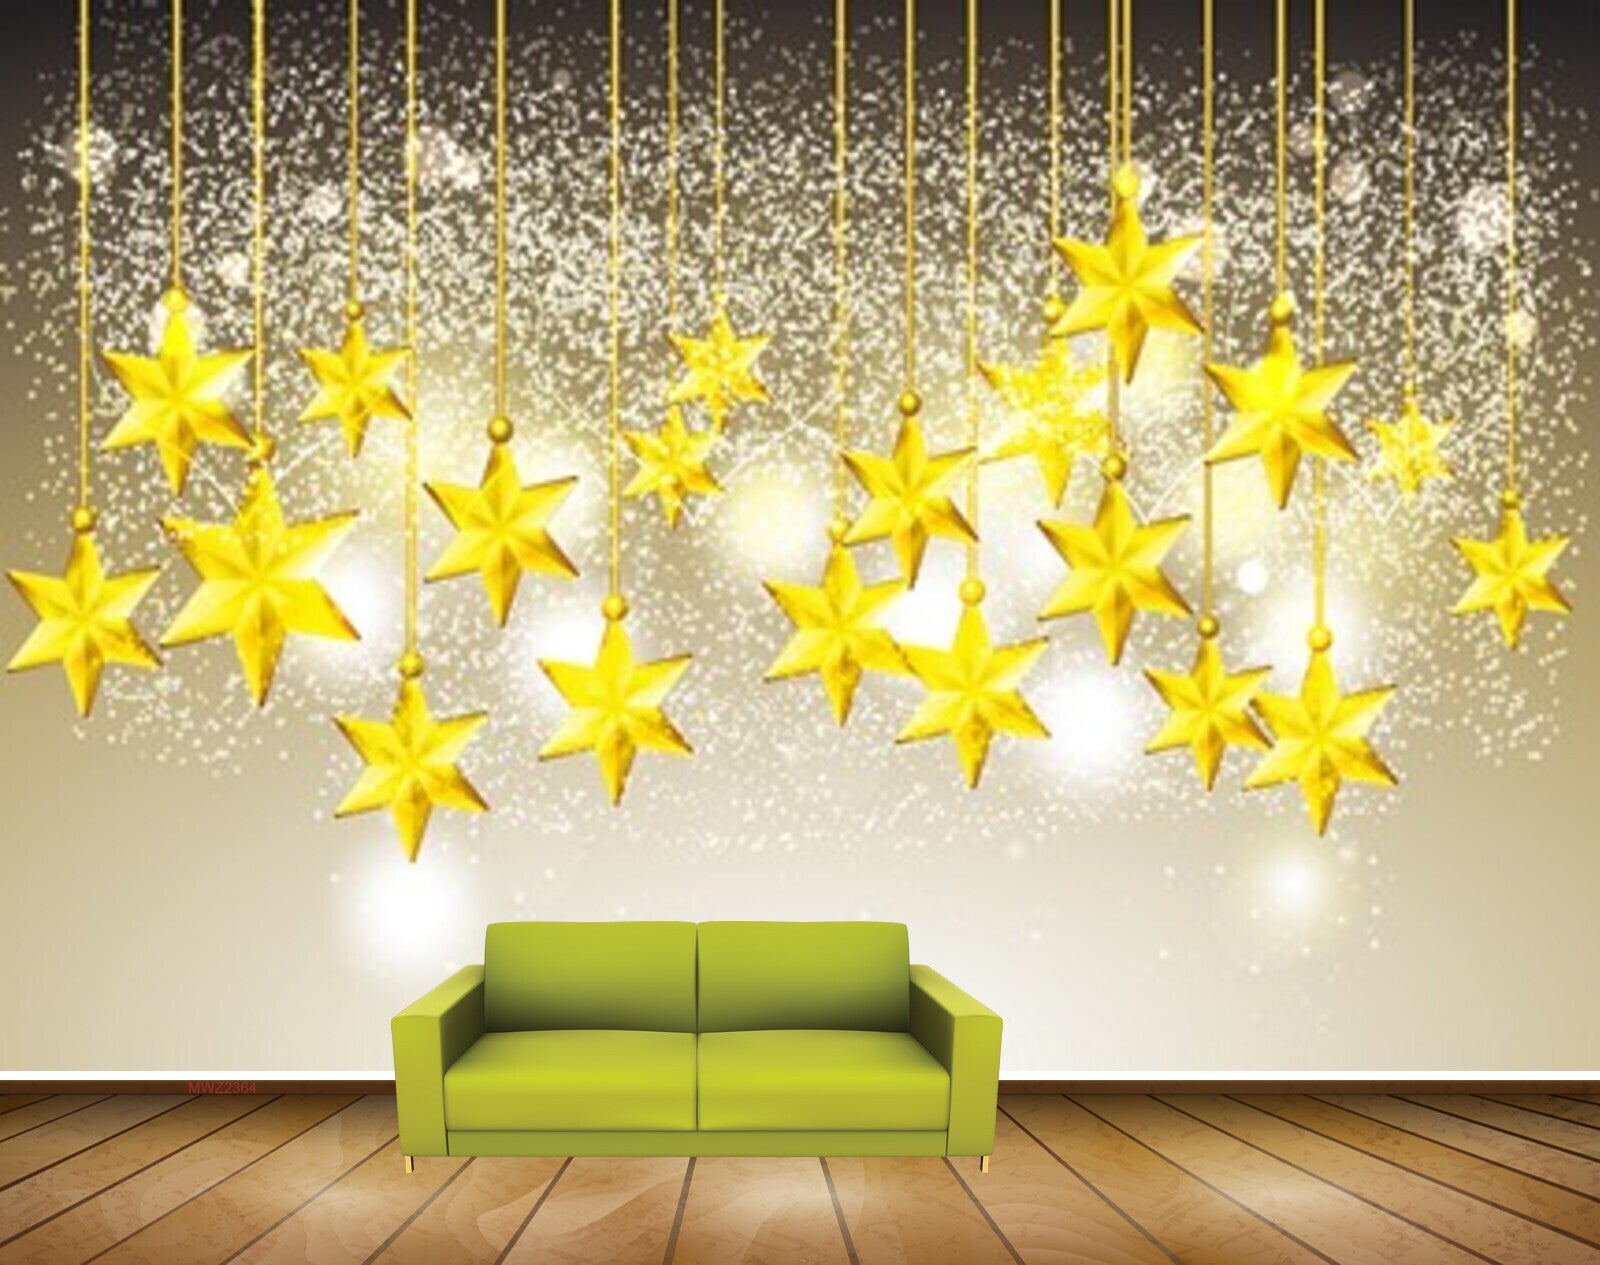 Avikalp MWZ2364 Golden Hanging Stars HD Wallpaper